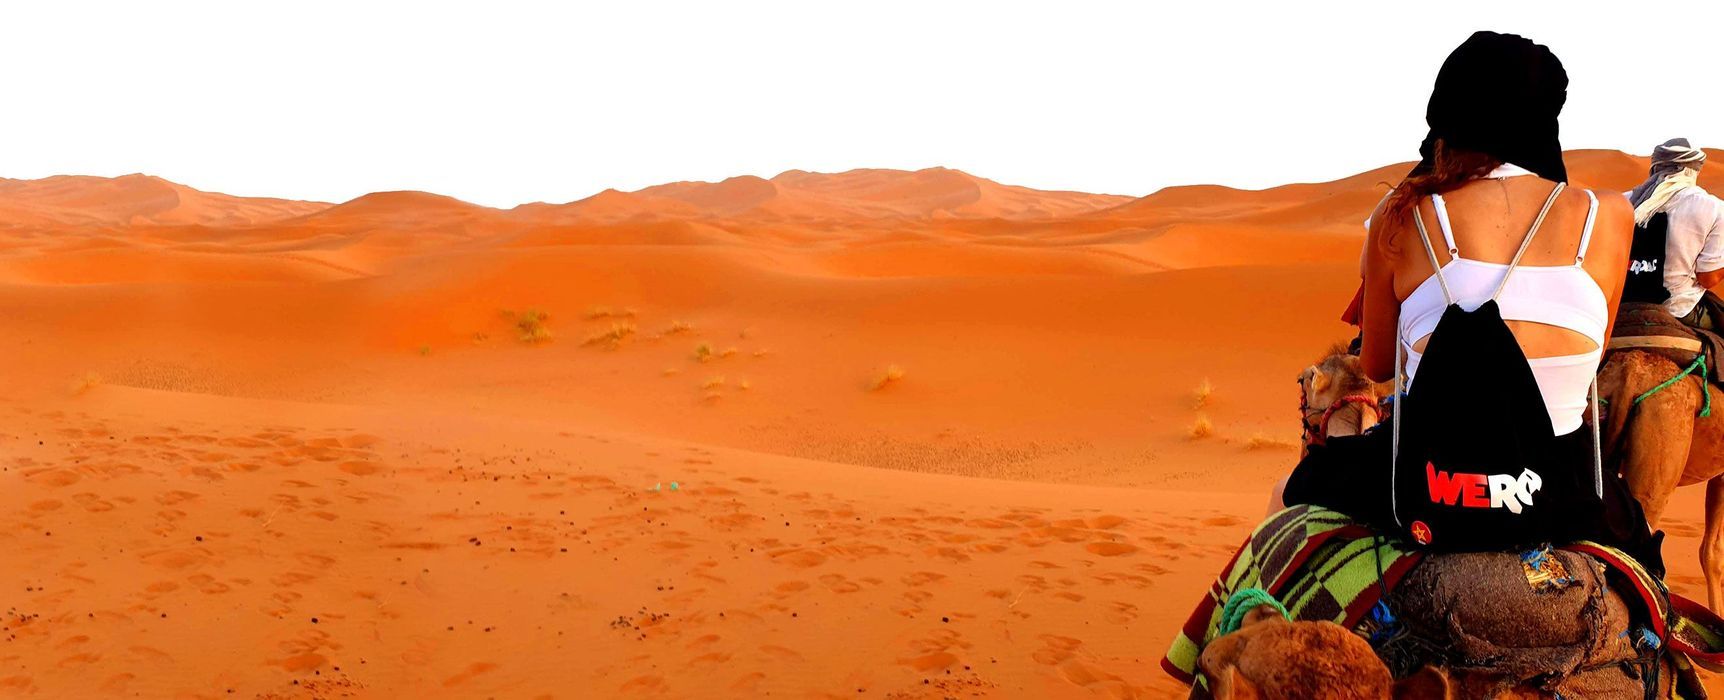 Viaggio di gruppo con escursione nel deserto del Sahara in Marocco